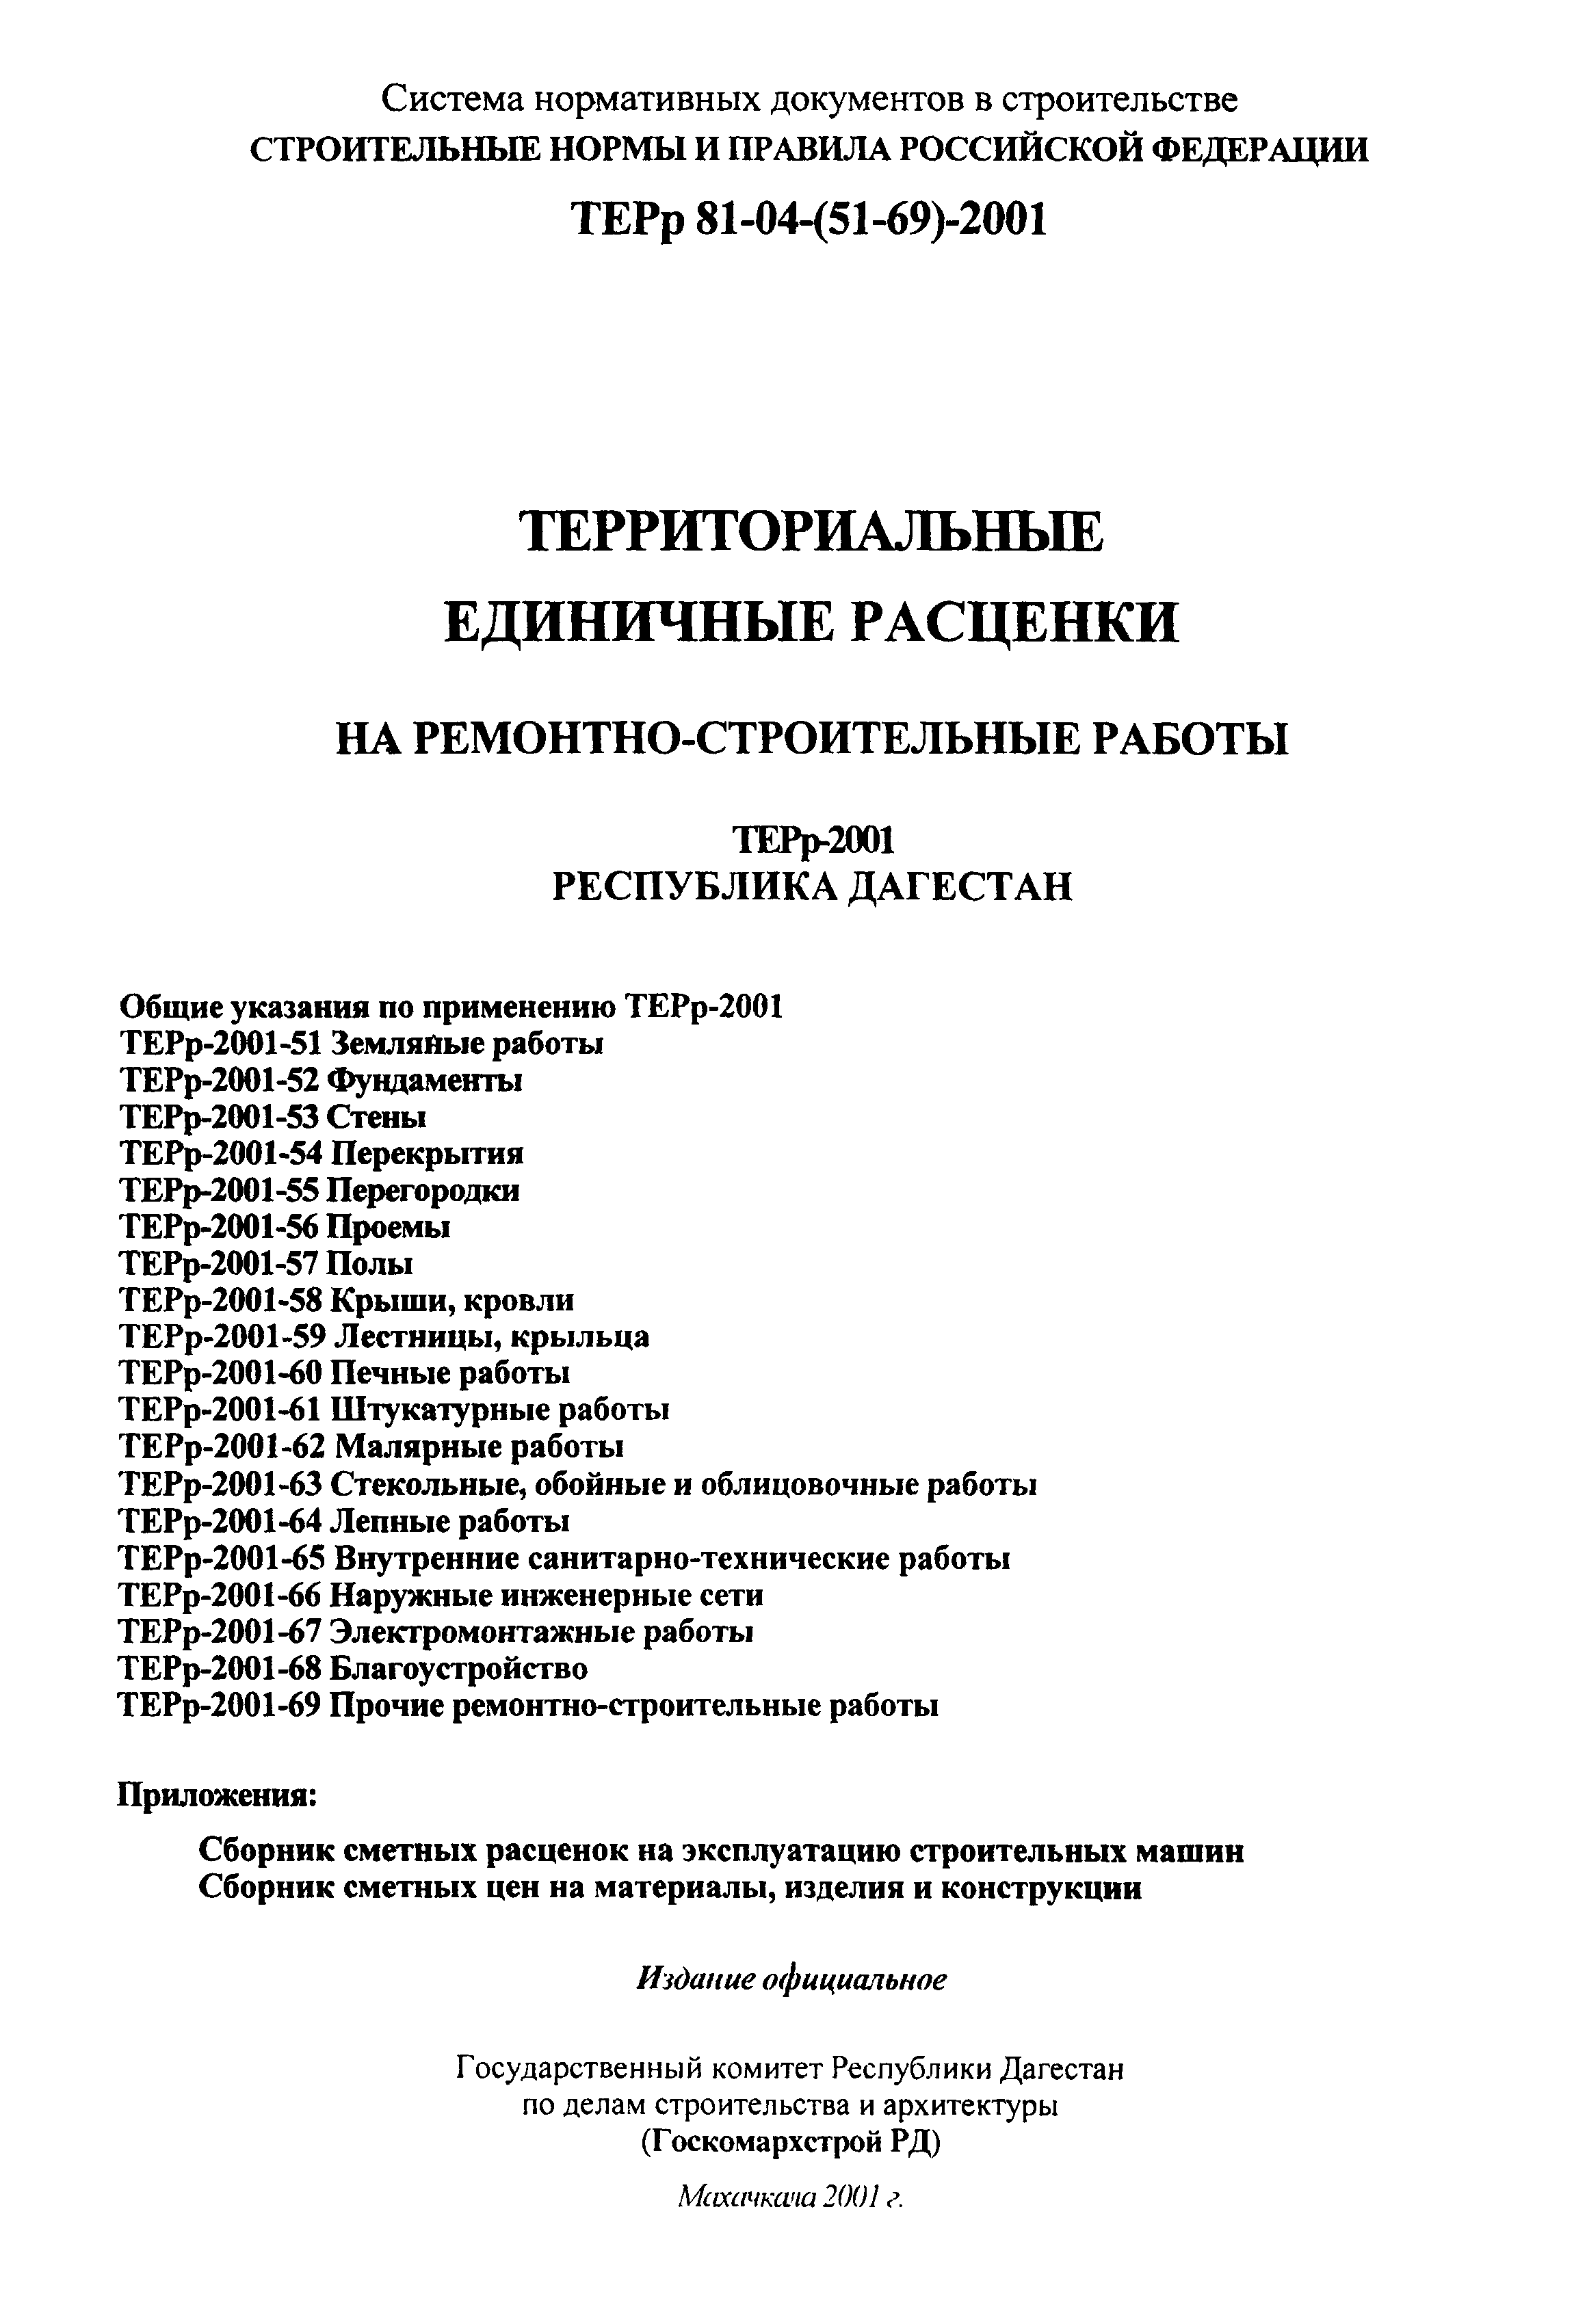 ТЕРр Республика Дагестан 2001-58